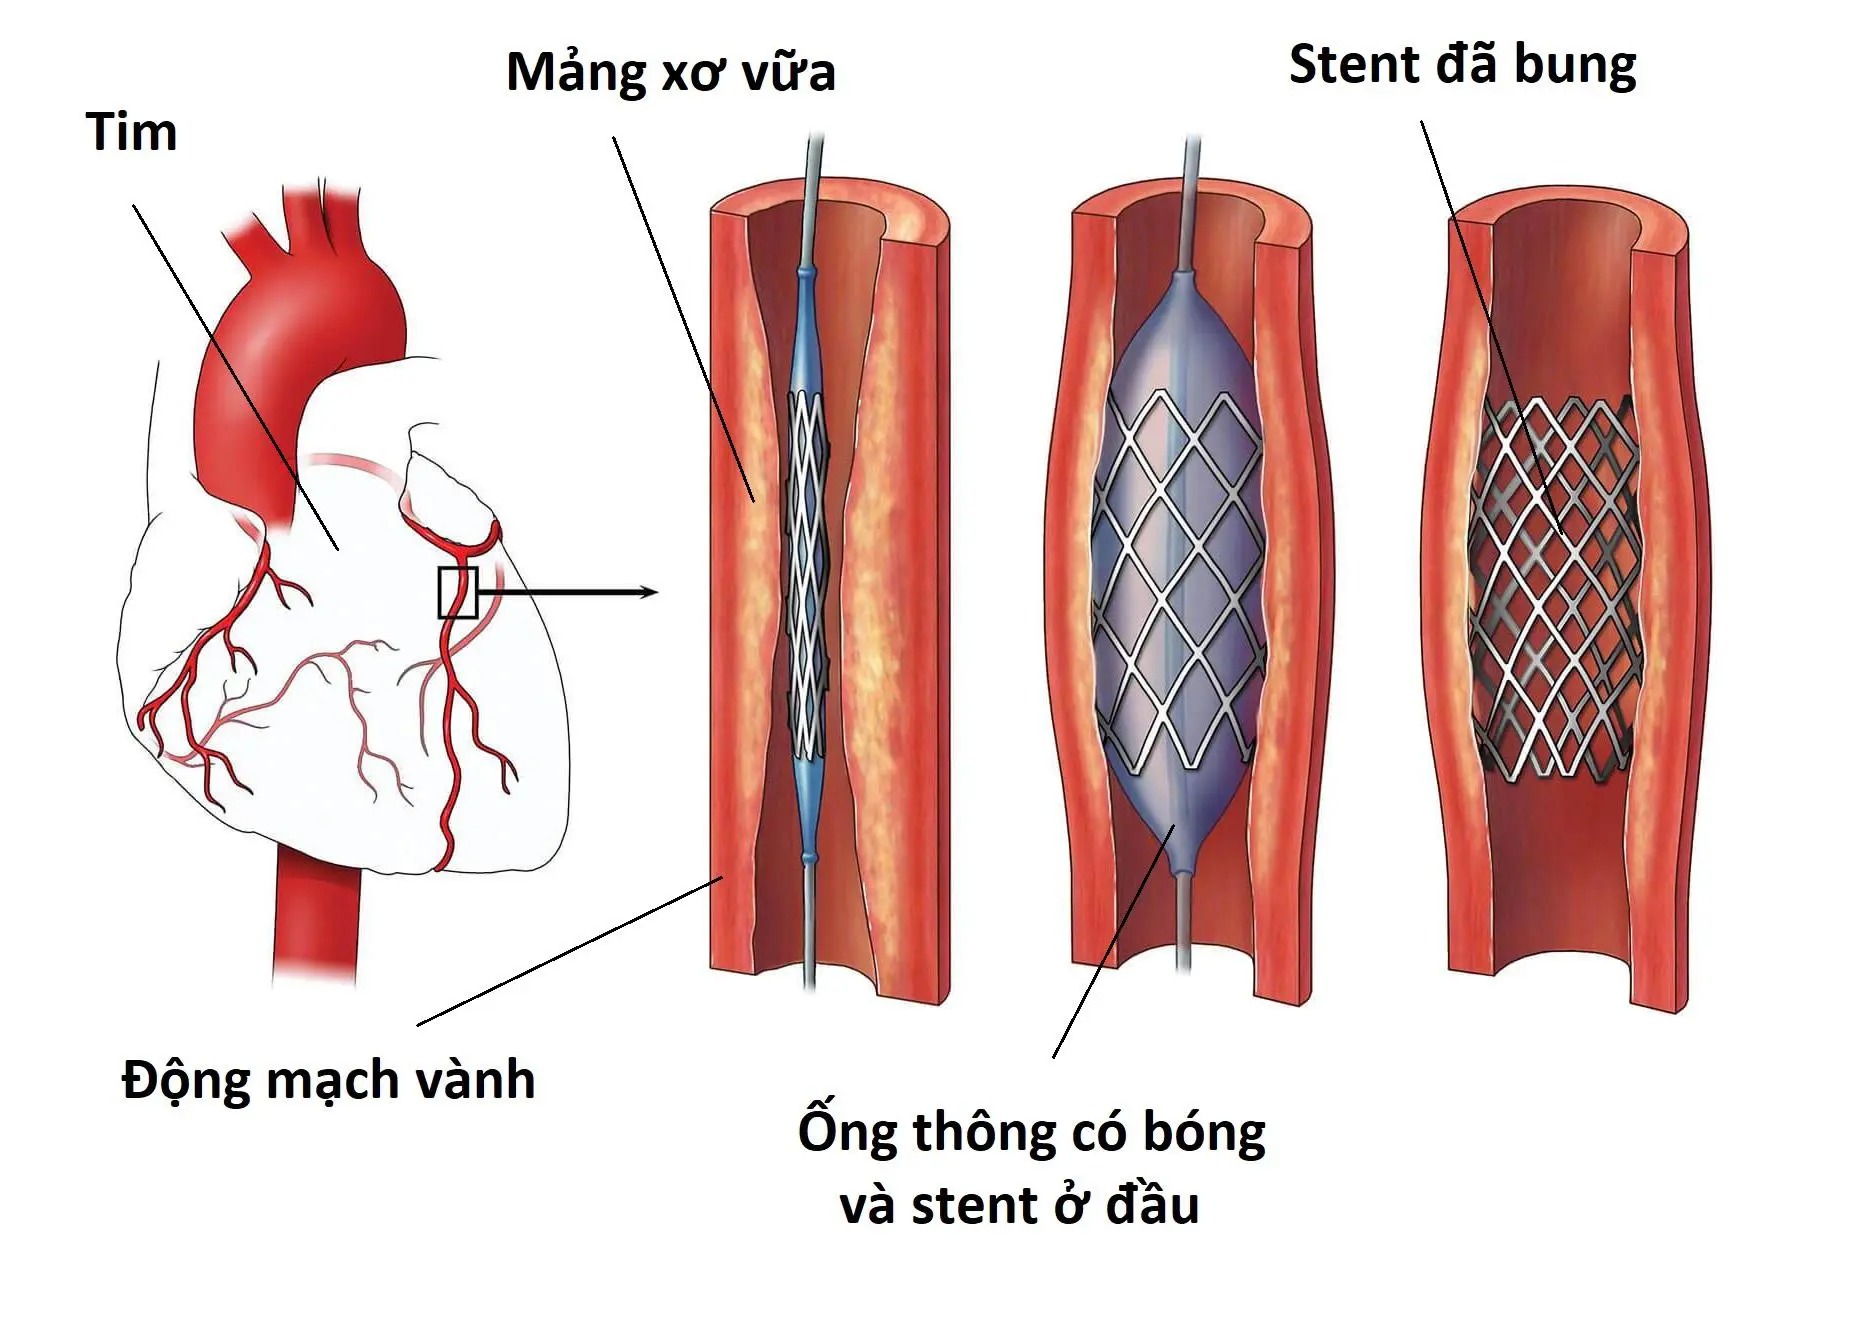 Đặt stent điều trị bệnh mạch vành thì hiệu quả được bao lâu?